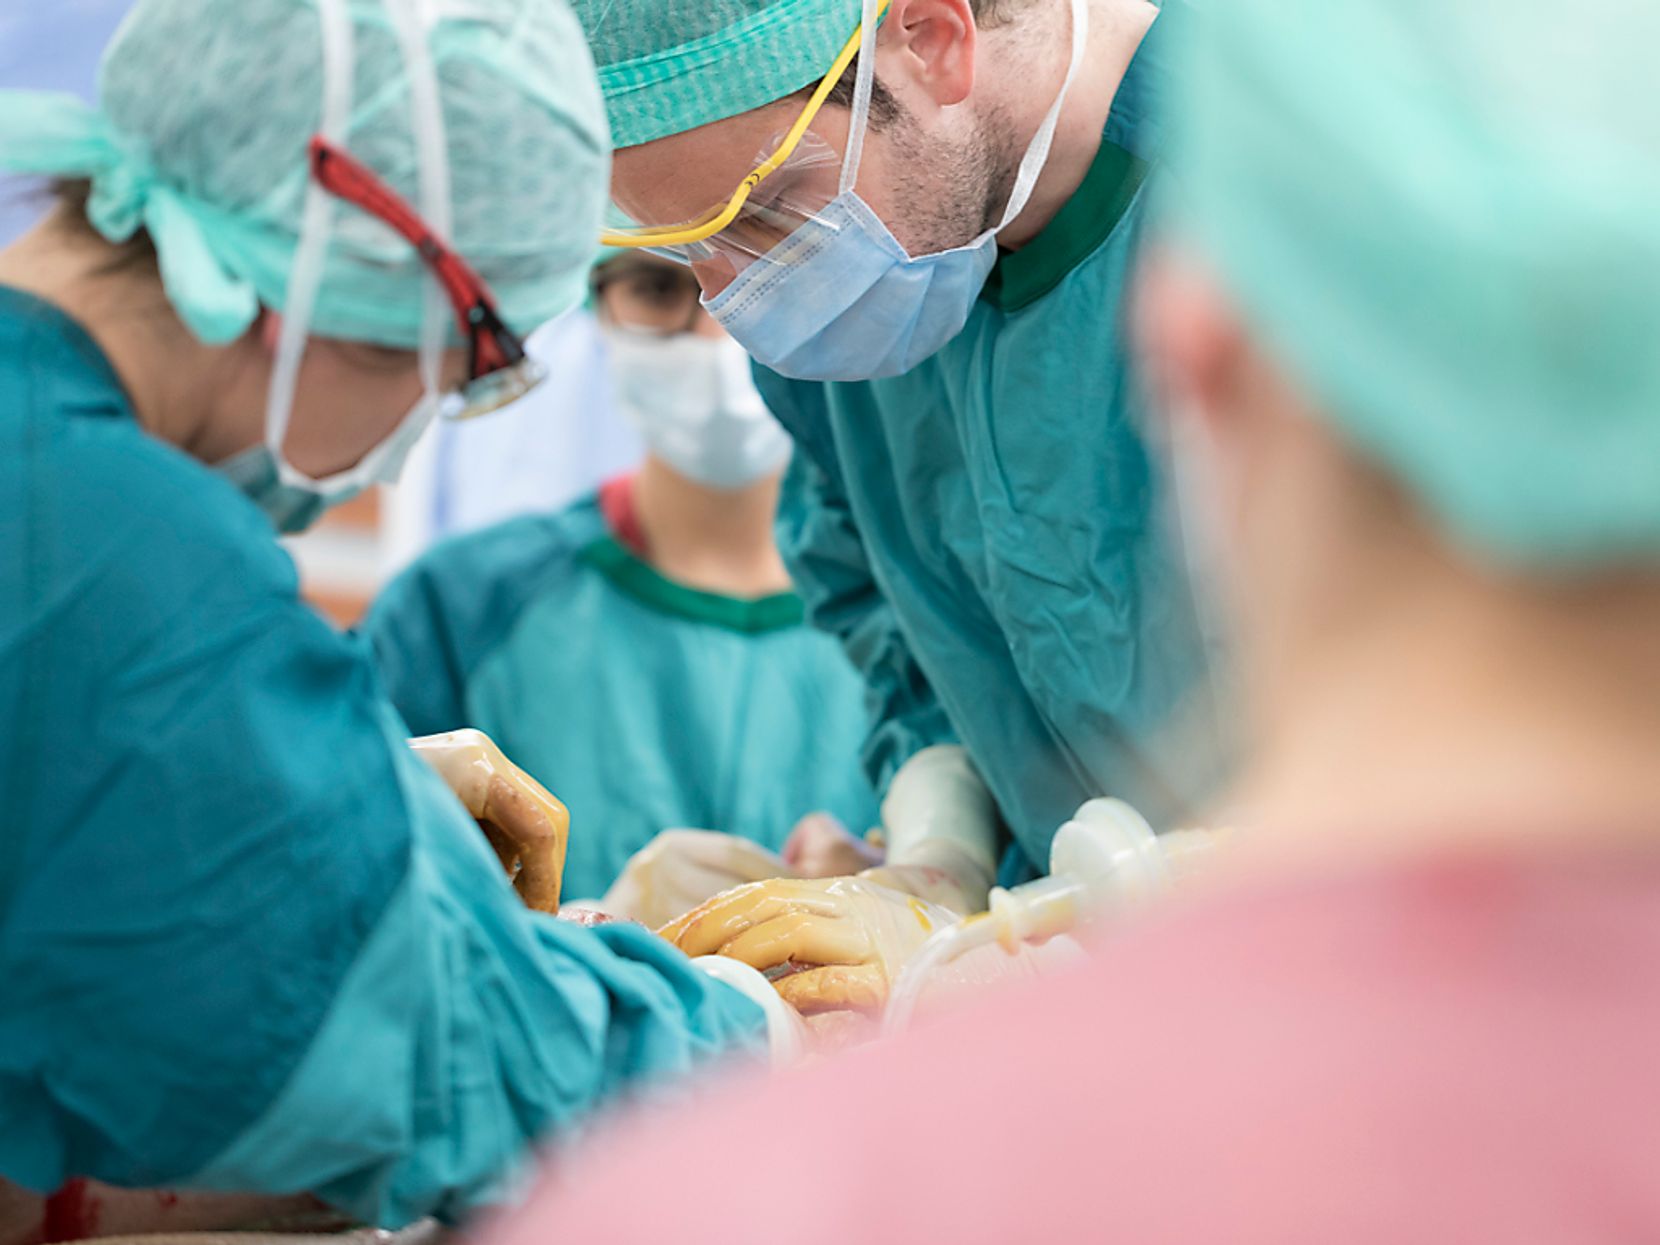 Man sieht mehrere Ärzte und Krankenhauspersonal in grüner Berufskleidung und mit Mundmasken bei einer Operation.